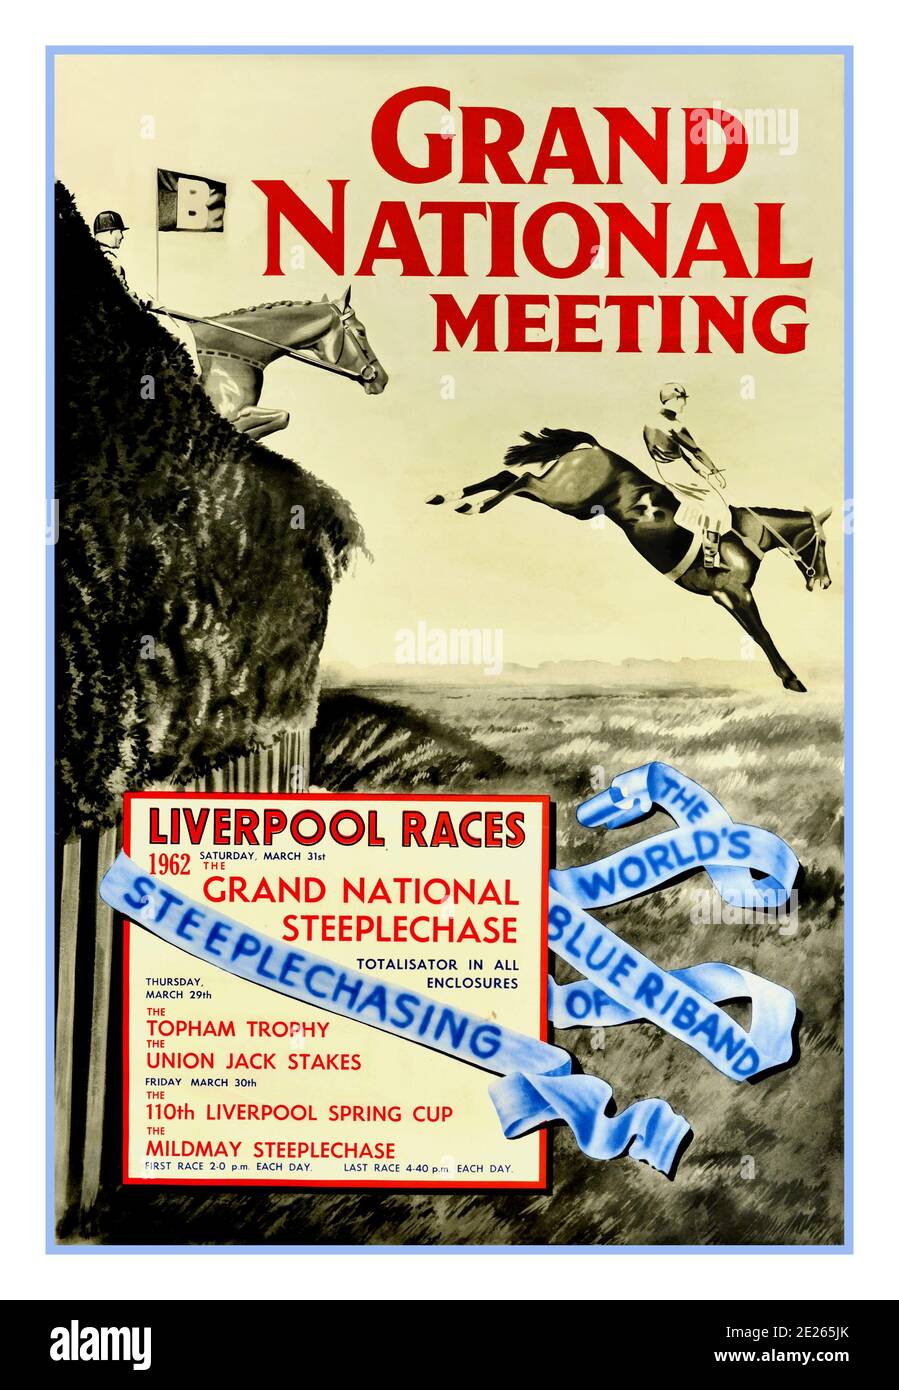 1962 GRAND NATIONAL STEEPLECHASE Vintage Sport Werbeplakat für Pferderennen, mit dem Titel Grand National Meeting - The World's Blue Riband of Steeplechasing, Liverpool Races, Kohlezeichnung von zwei Pferden und Jockeys in Aktion, Springen über ein Hindernis auf einem Steeplechase-Kurs. Das Grand National ist ein nationales Hunt Pferderennen, das jährlich auf der Aintree Racecourse in der Nähe von Liverpool, England, stattfindet. Es ist das wertvollste Sprungrennen in Europa. Die Veranstaltung fand am 31. März 1962, Samstag. Gedruckt bei Turner und Dunnet Limited, Liverpool. GROSSBRITANNIEN, 1962 Stockfoto